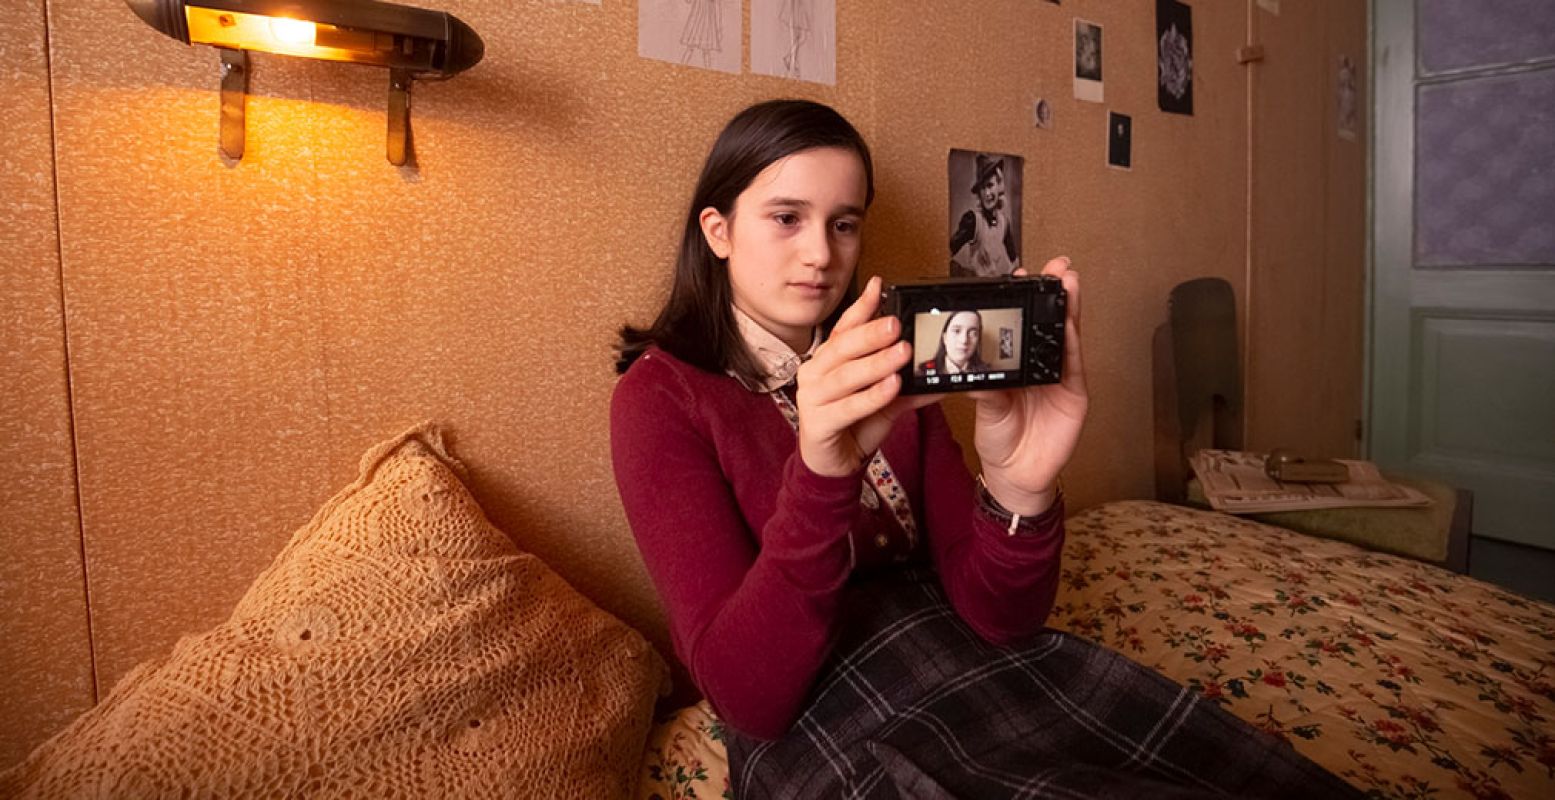 Anne Frank (gespeeld door de dertienjarige Luna Cruz Perez) in het Achterhuis met haar camera. Je kunt haar vlogs zien in de YouTube serie Anne Frank videodagboek. Foto: copyright Anne Frank Huis, fotograaf Ray van der Bas